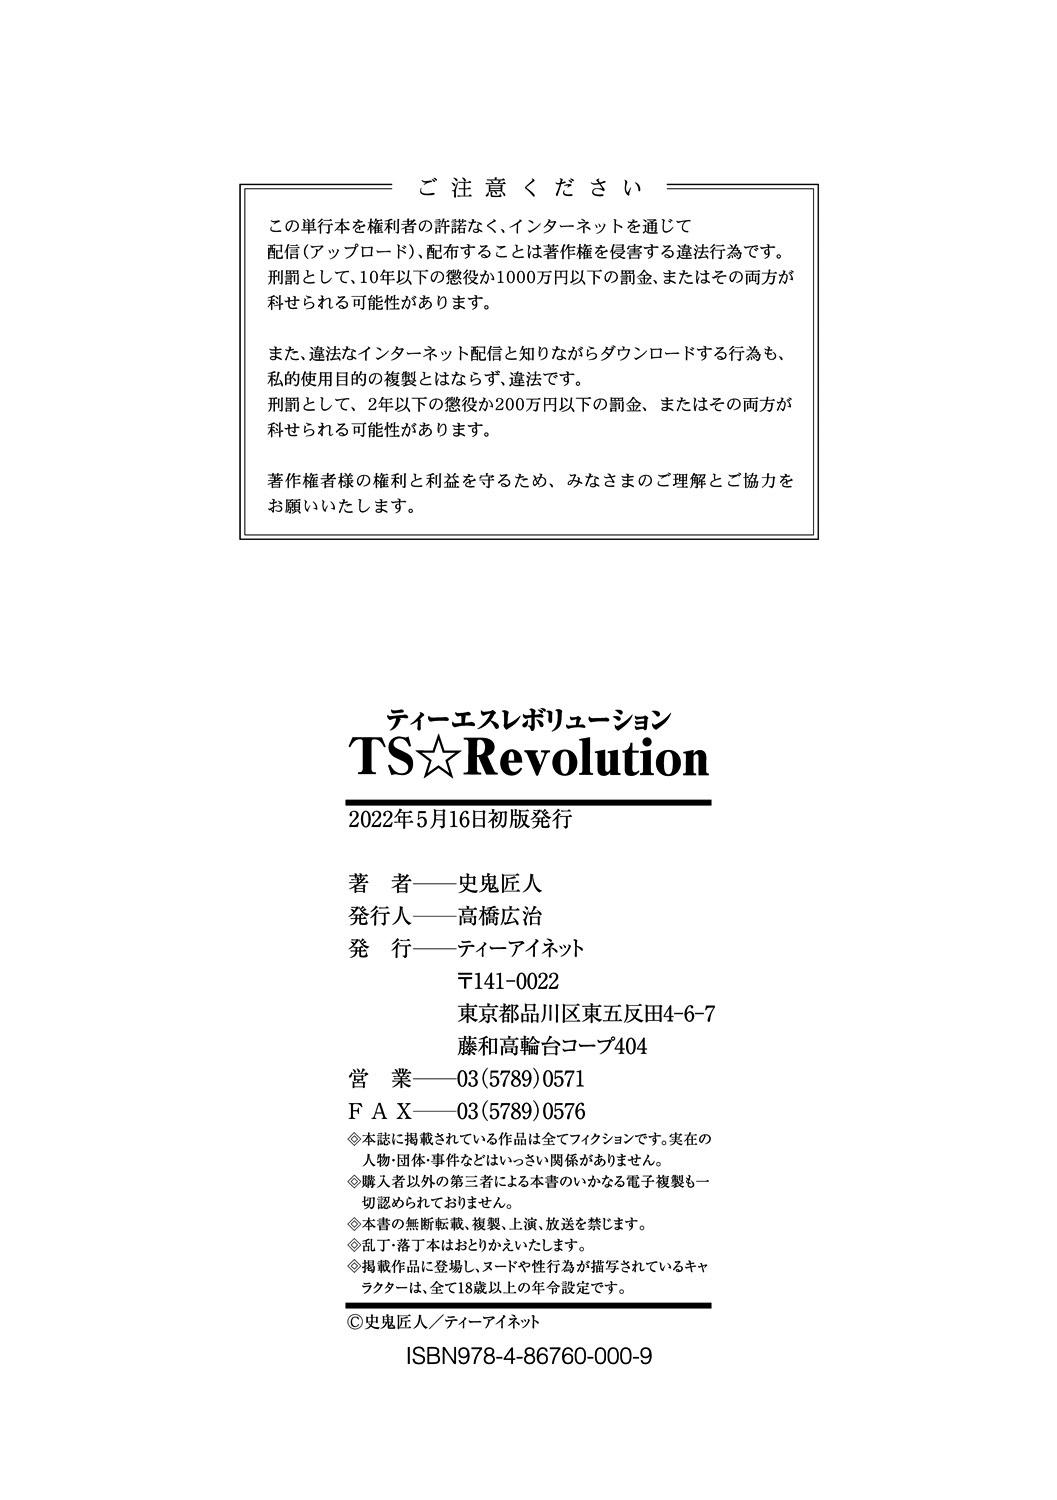 TS Revolution 200